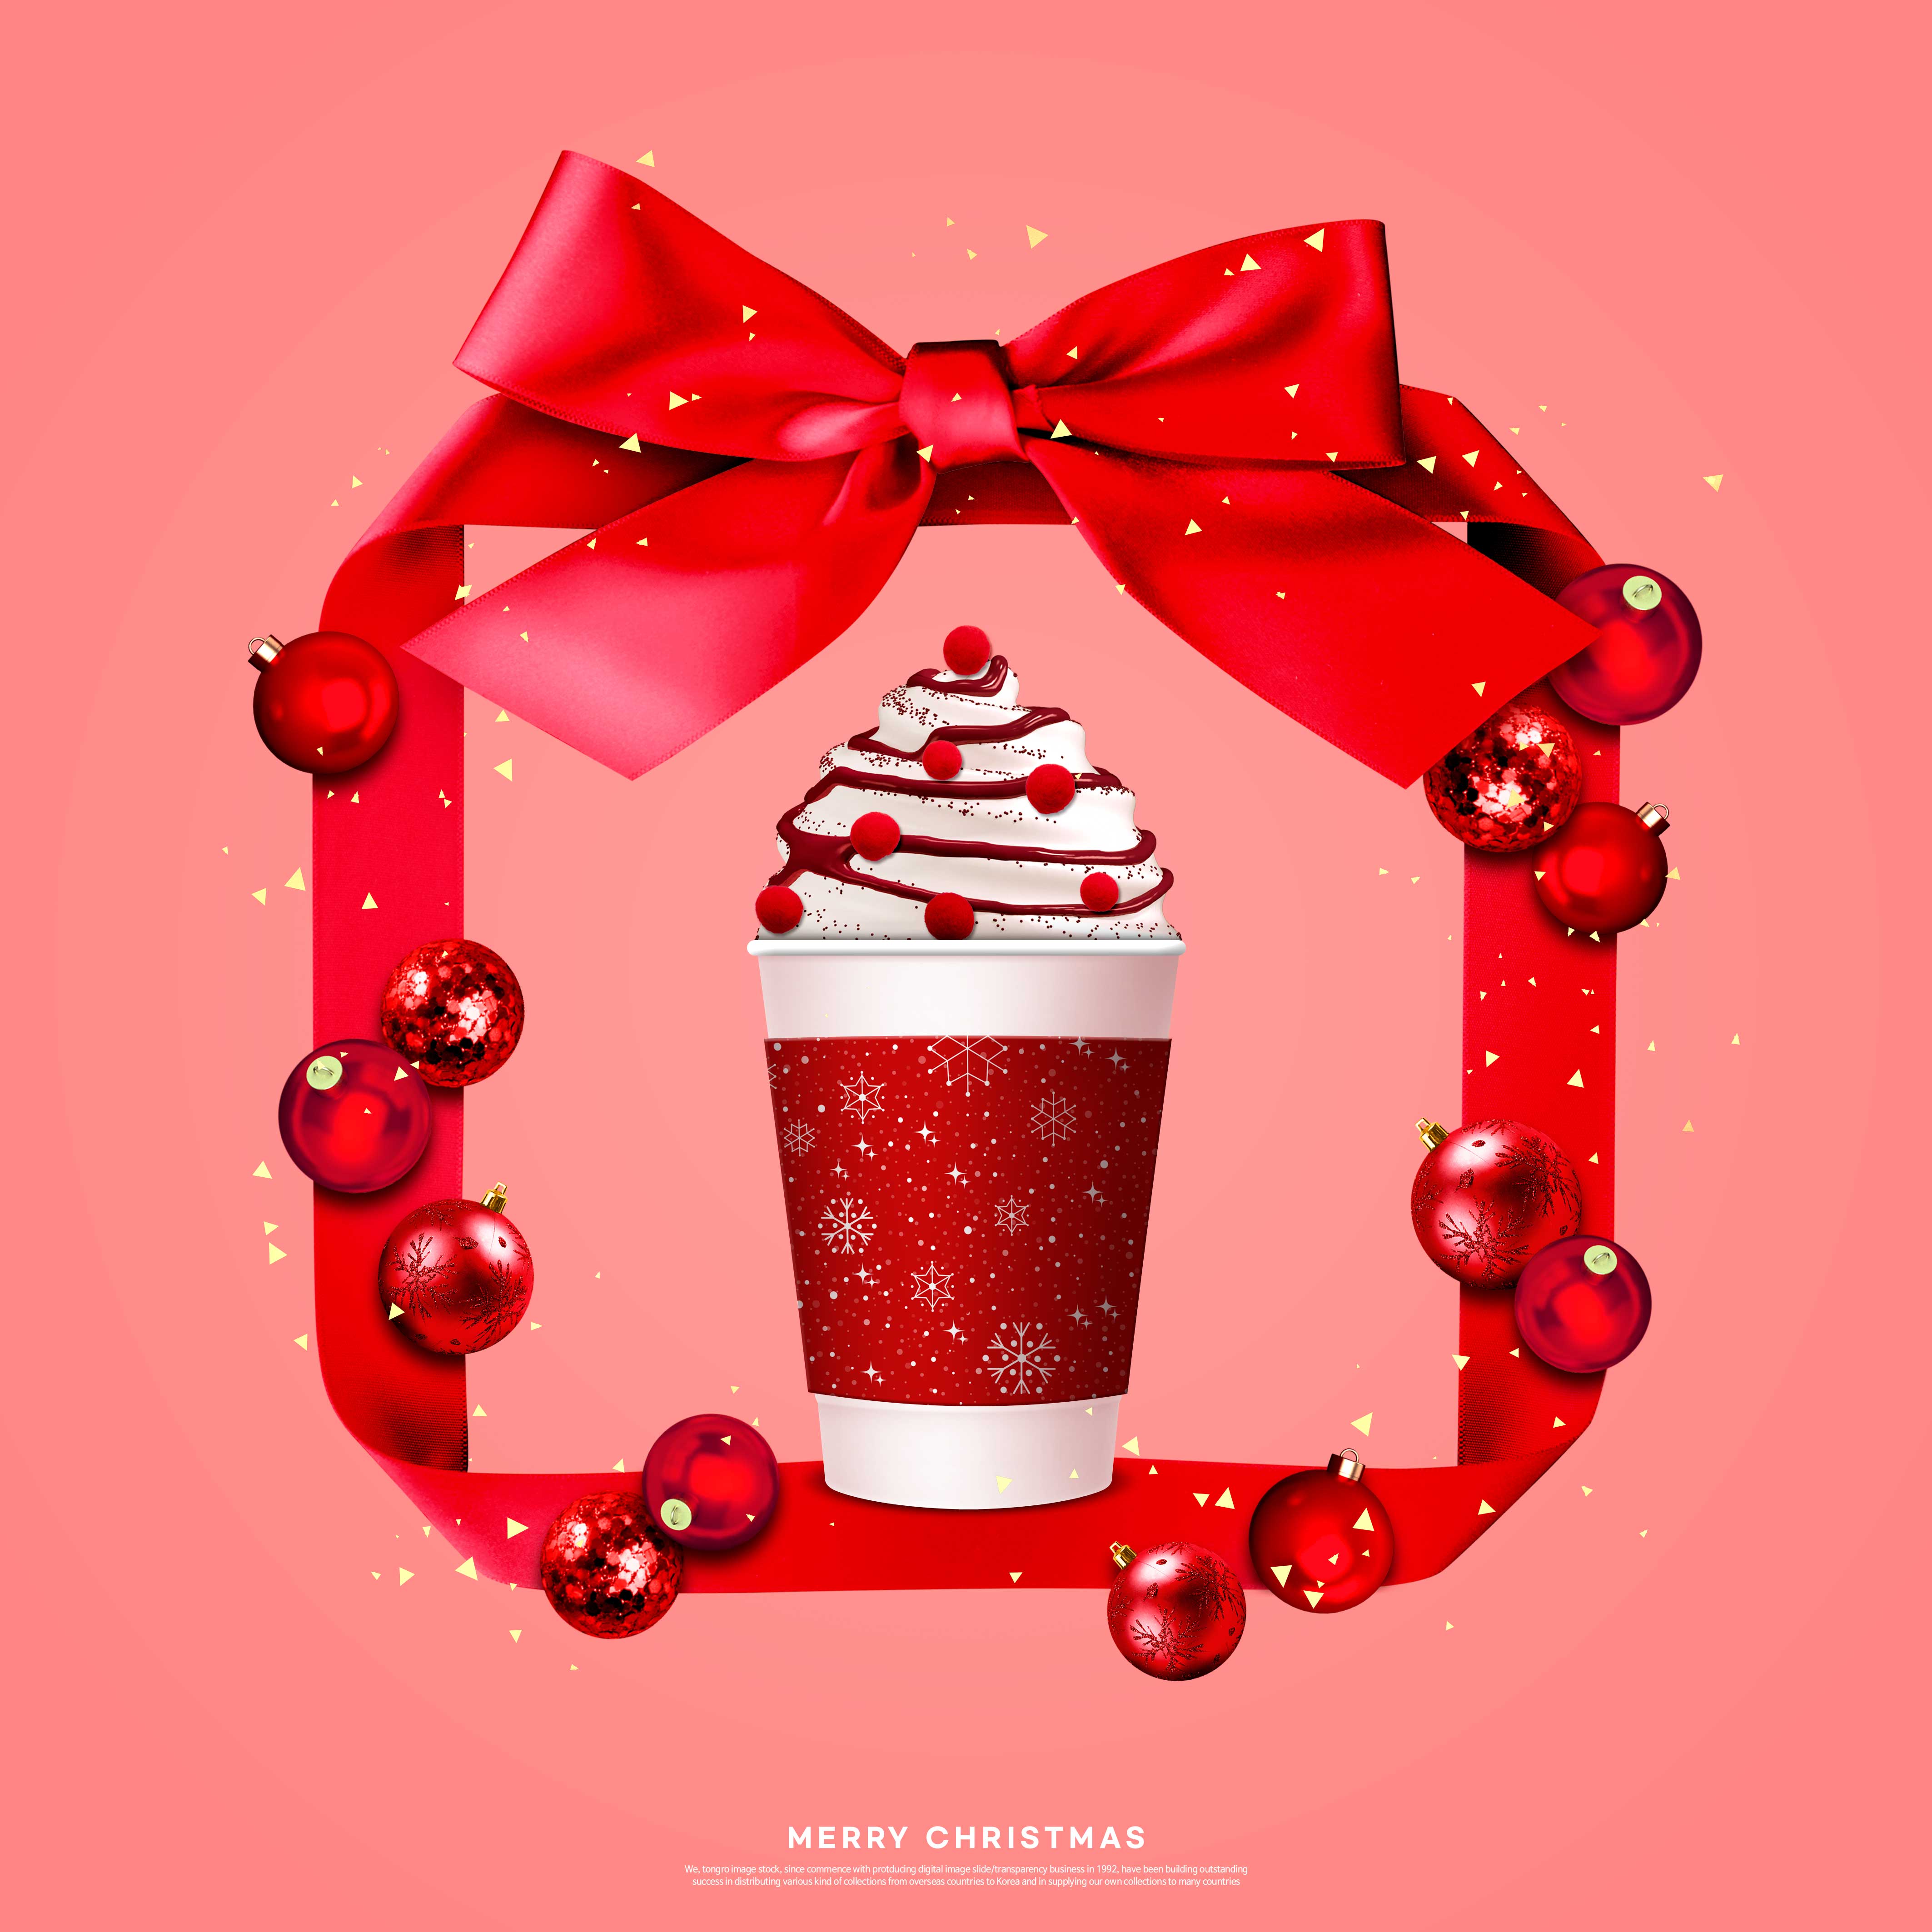 雪糕产品推广蝴蝶结礼品元素圣诞海报设计模板设计素材模板